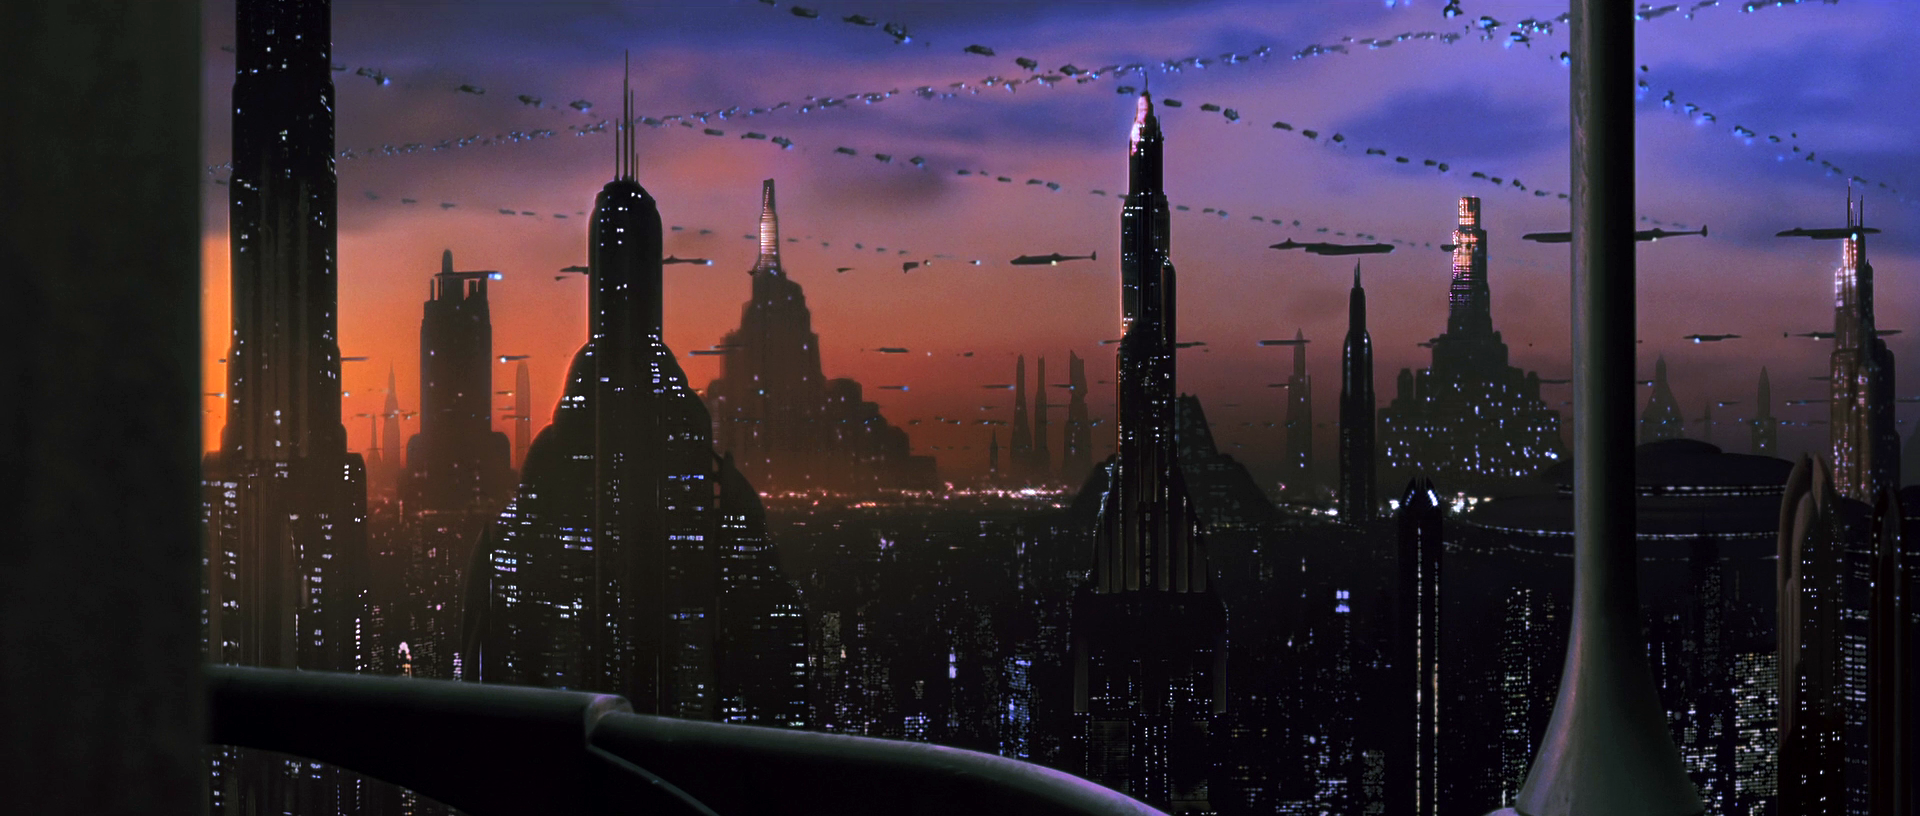 La Ville Dans Les Films De Science Fiction Demain